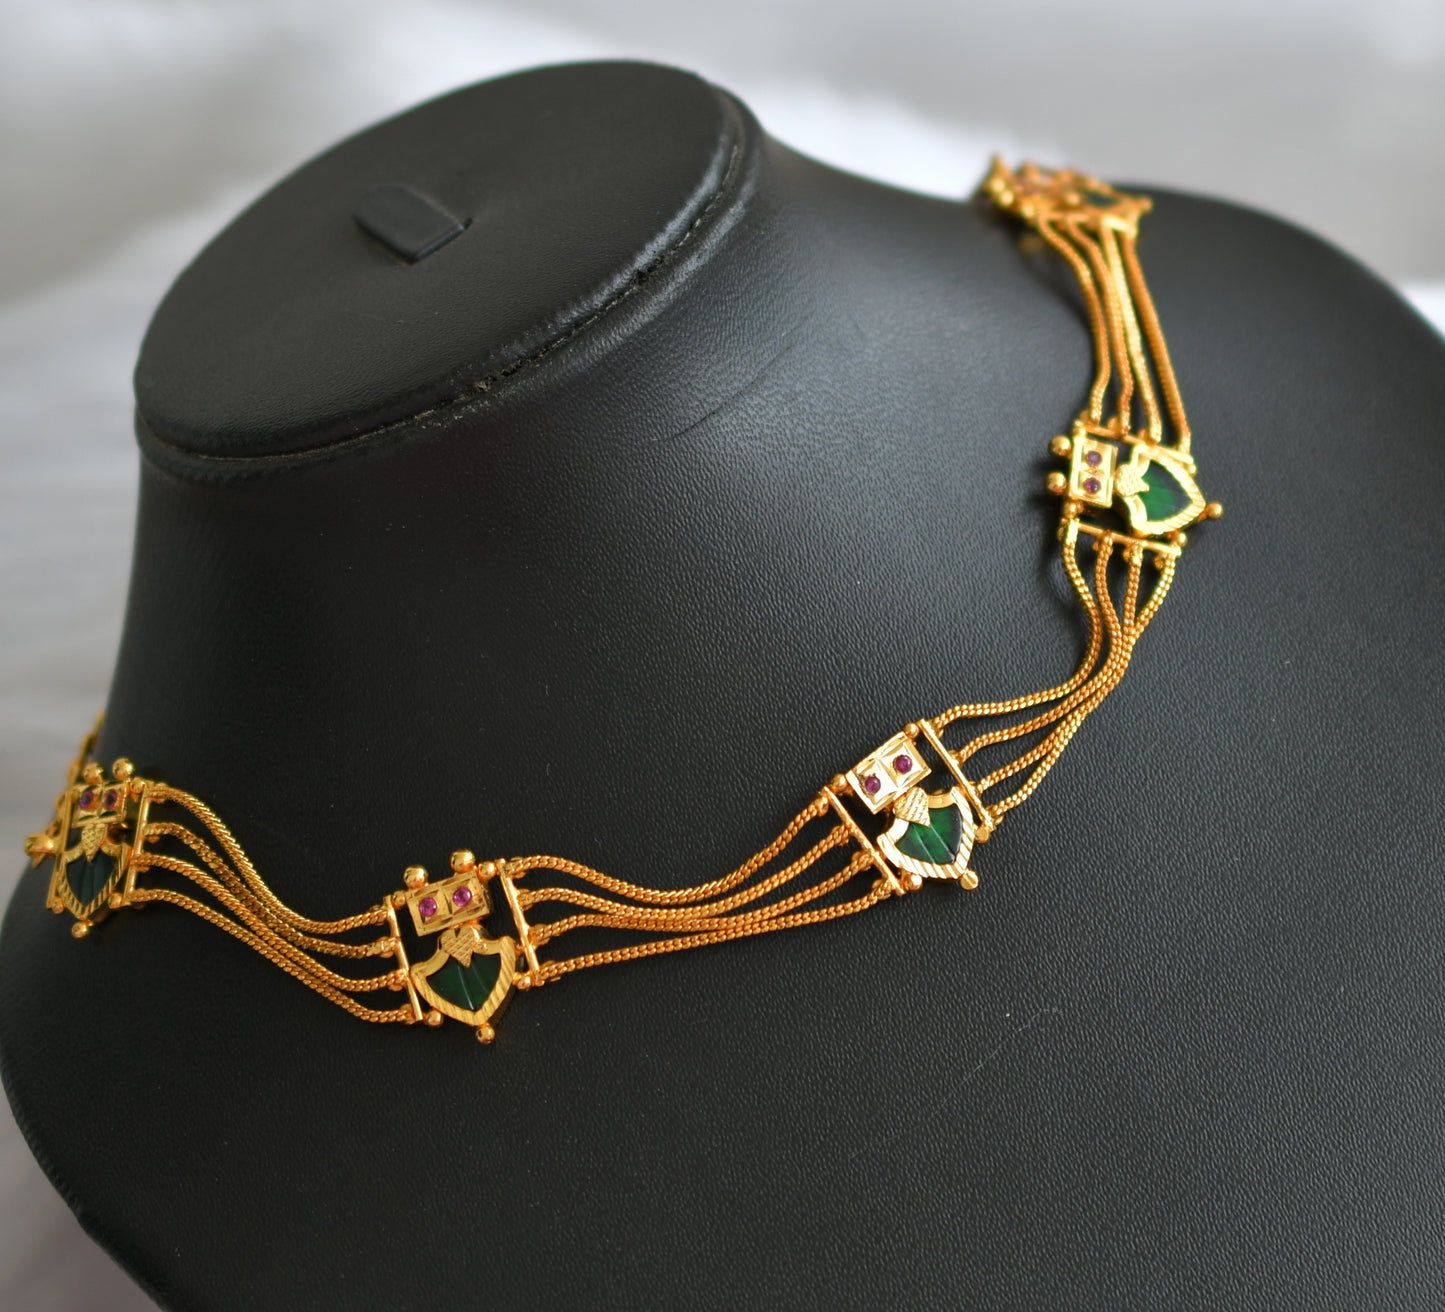 Gold tone green palakka Kerala style choker necklace dj-38986